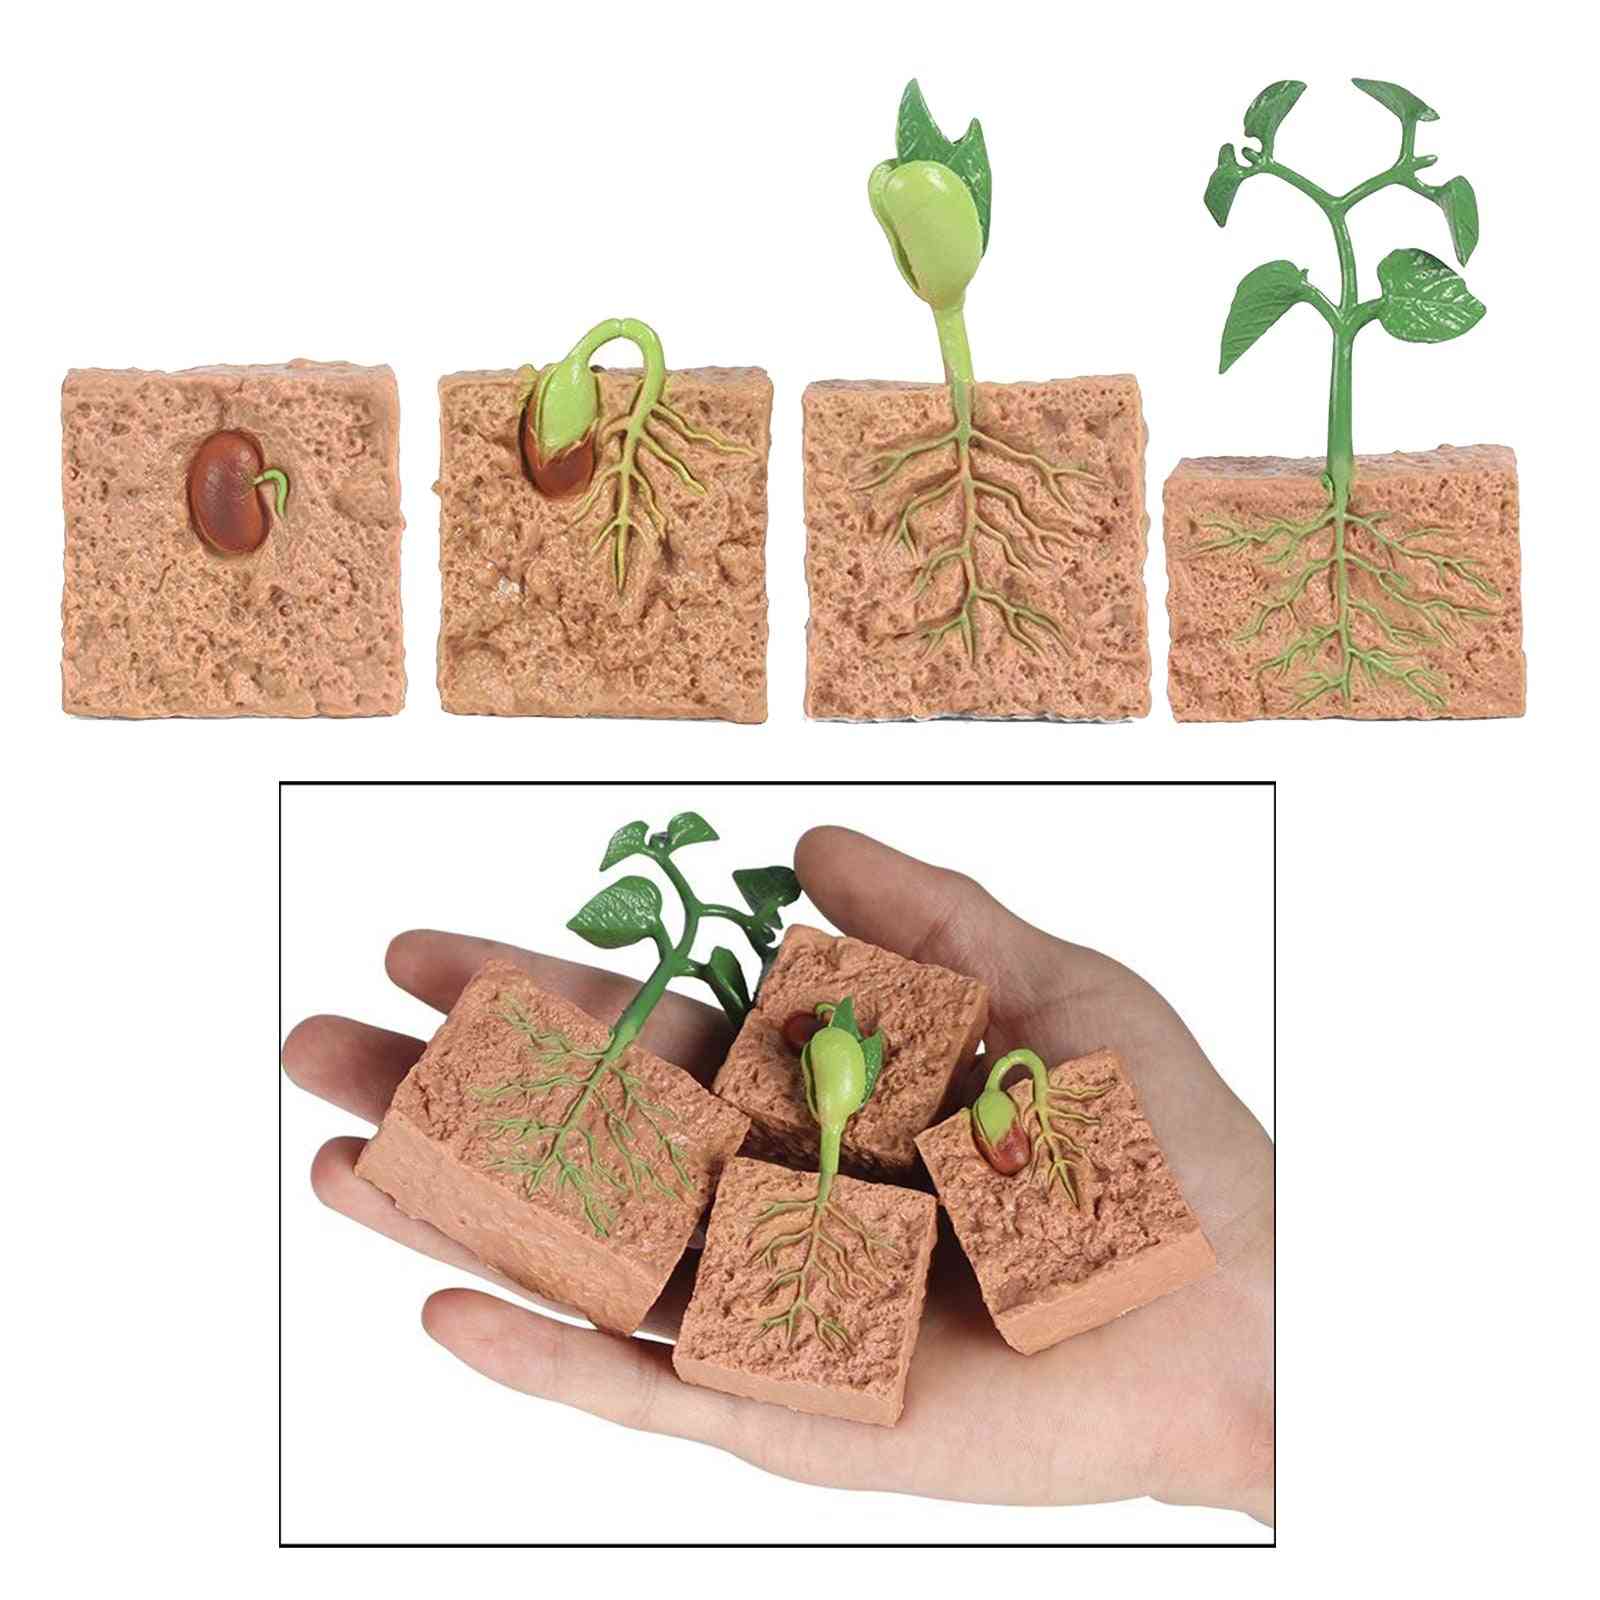 Semillas de plantas, ciclo de vida de crecimiento, juego cognitivo, niños para material didáctico